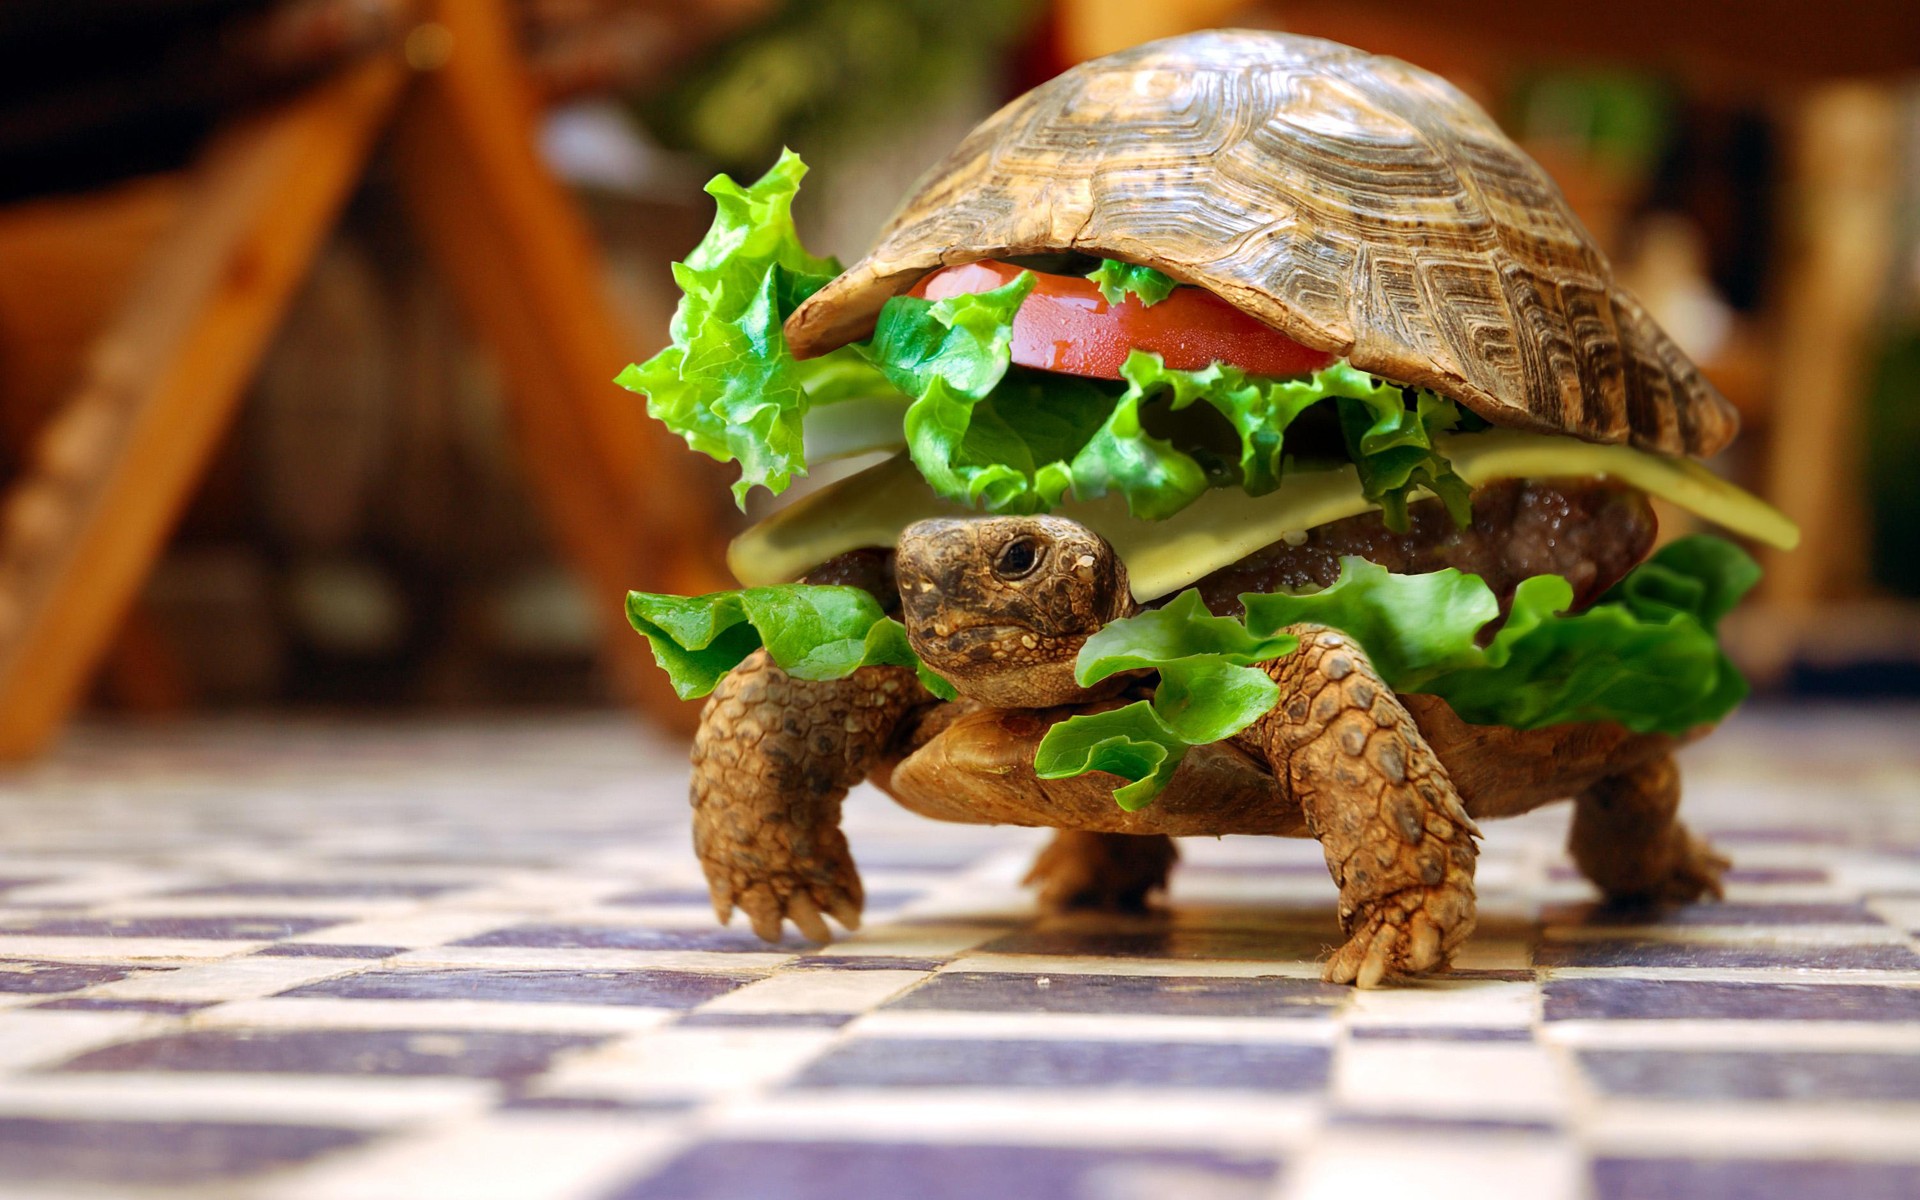 Turtle Wallpaper Burger Verl Uft Entlang Dem Boden Schildkr Te